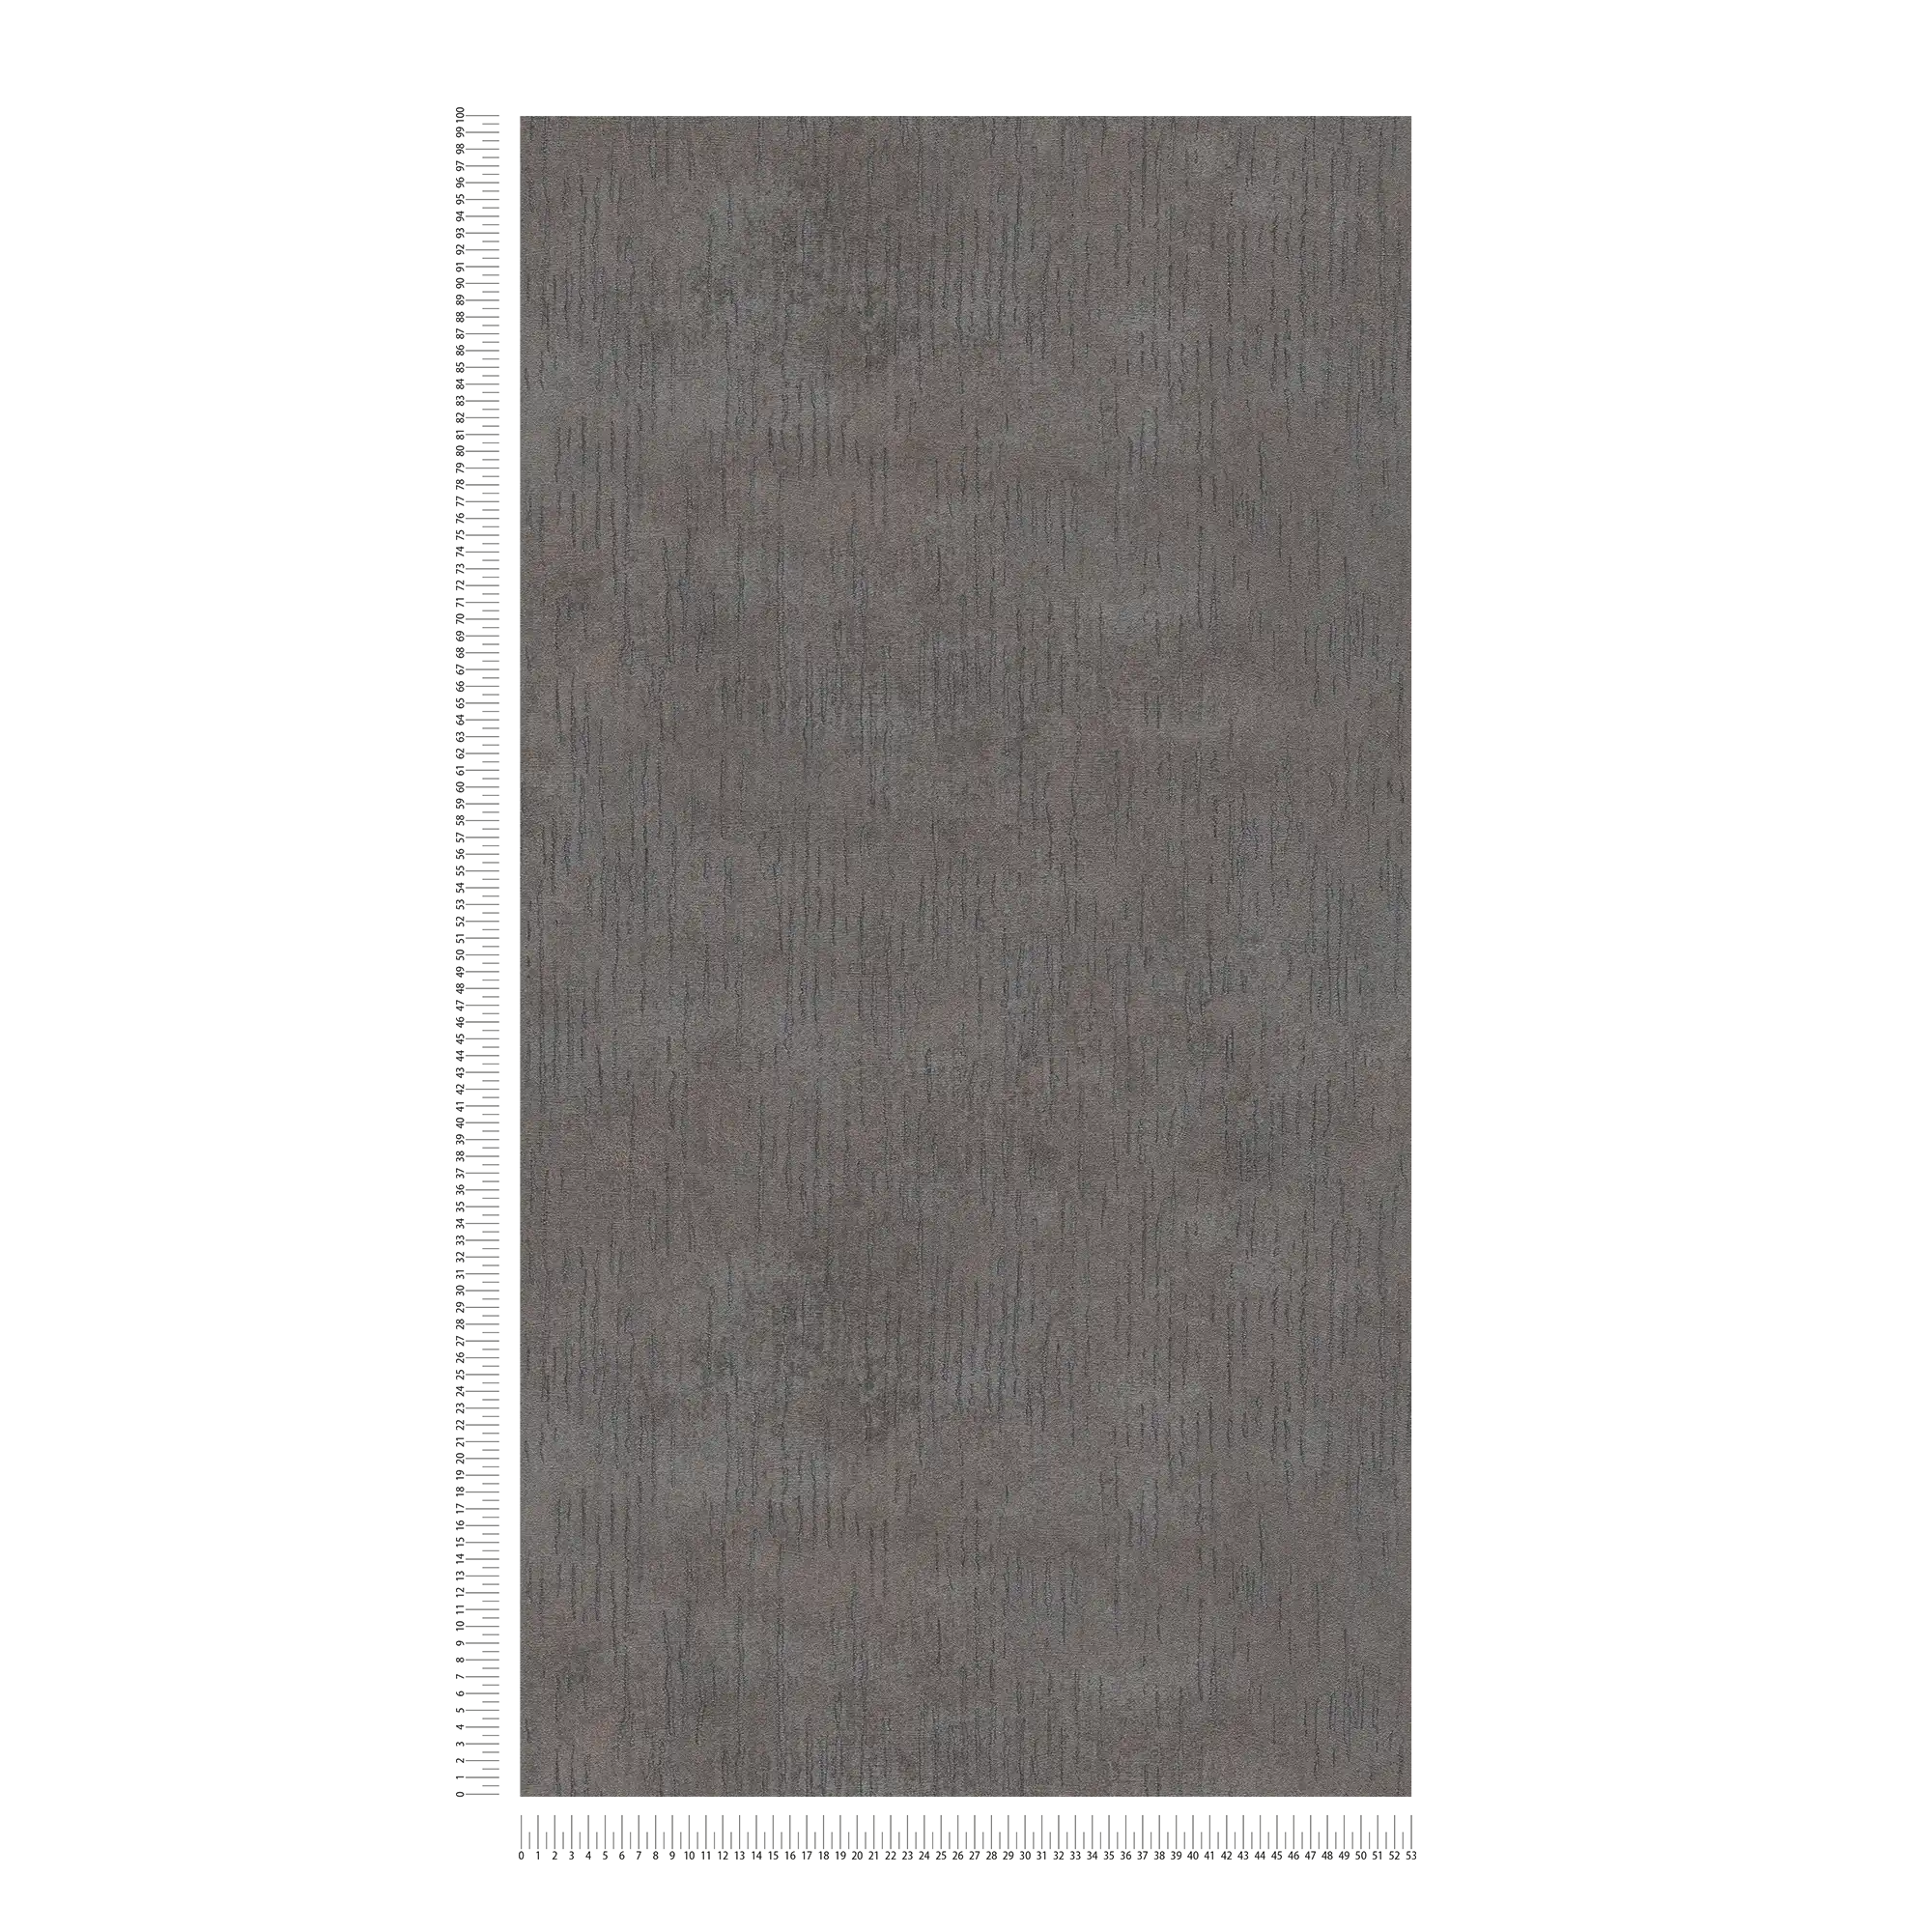             Papel pintado liso antracita con aspecto metálico - gris, metálico, negro
        